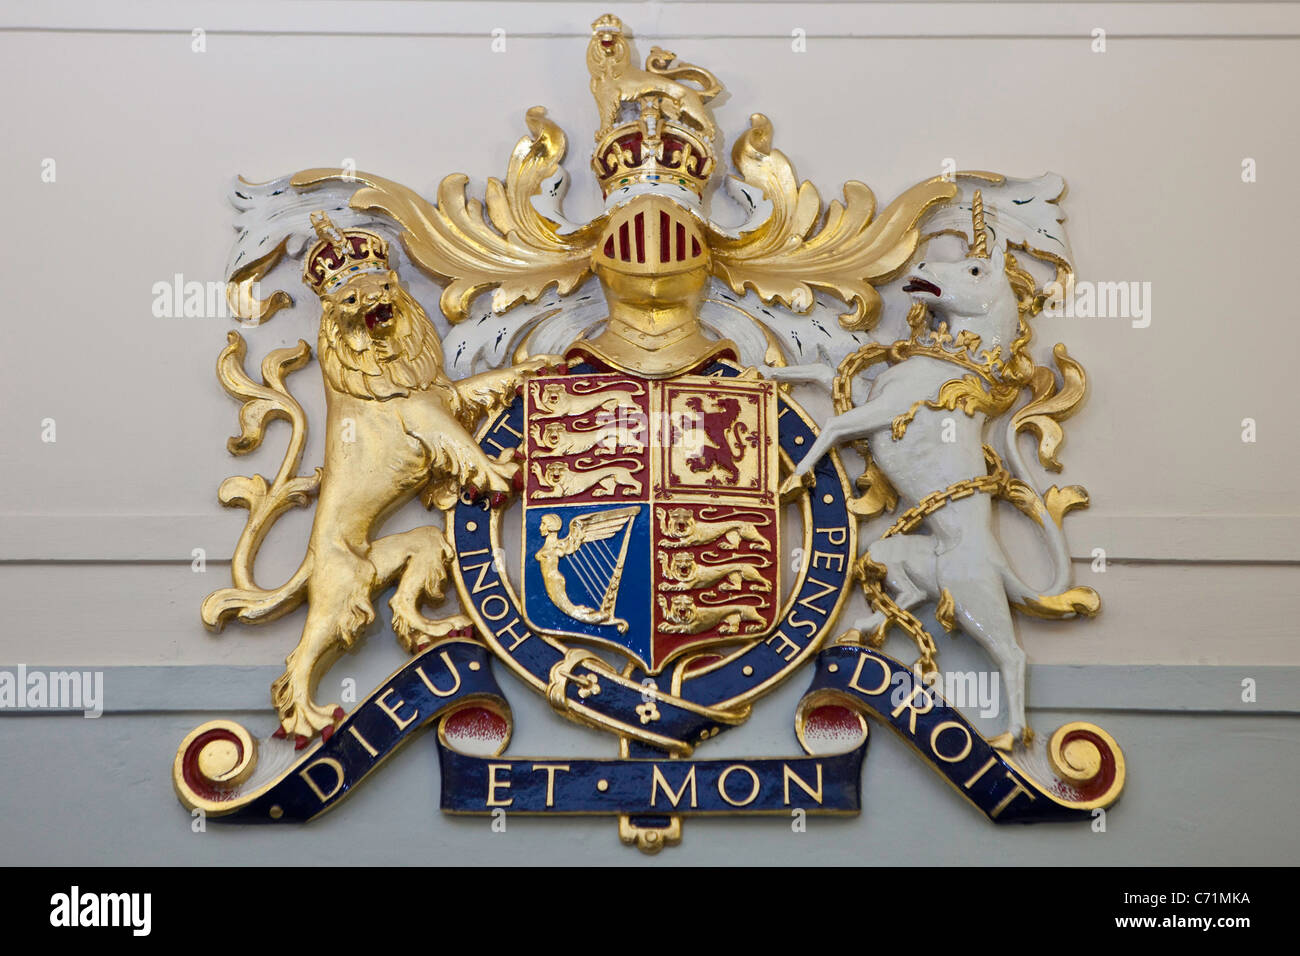 La stemma reale che appare in tutte le aule di tribunale in Inghilterra. Stemma ufficiale della monarca britannico. Foto Stock